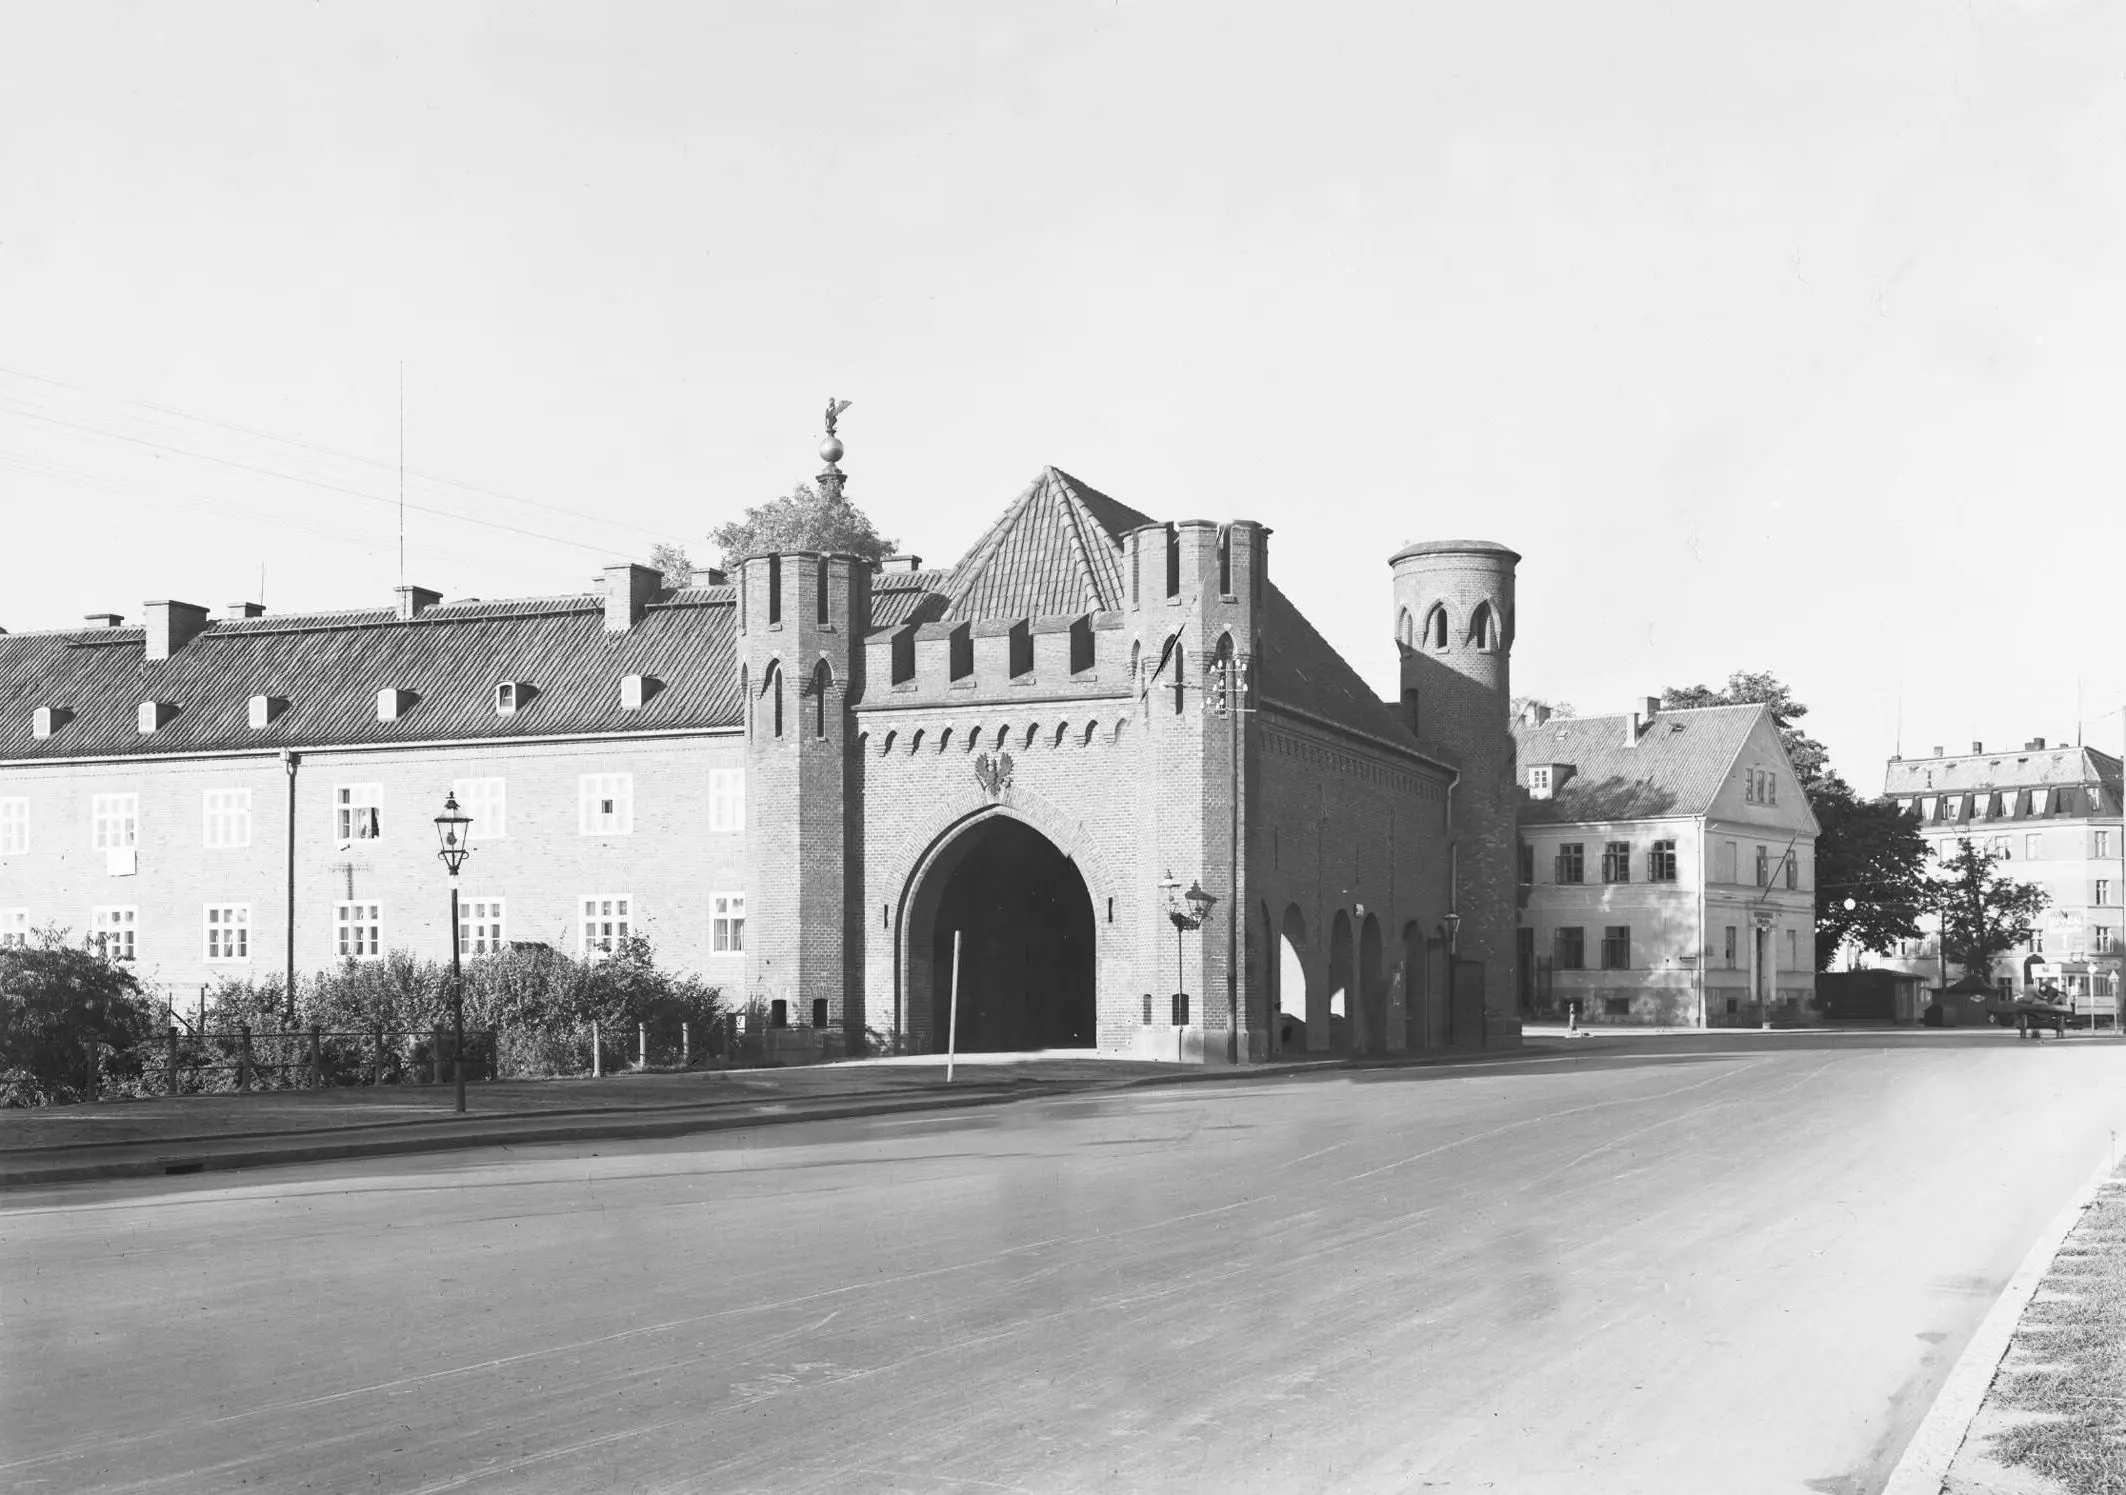 Закхаймские ворота Кёнигсберга в 1938 году